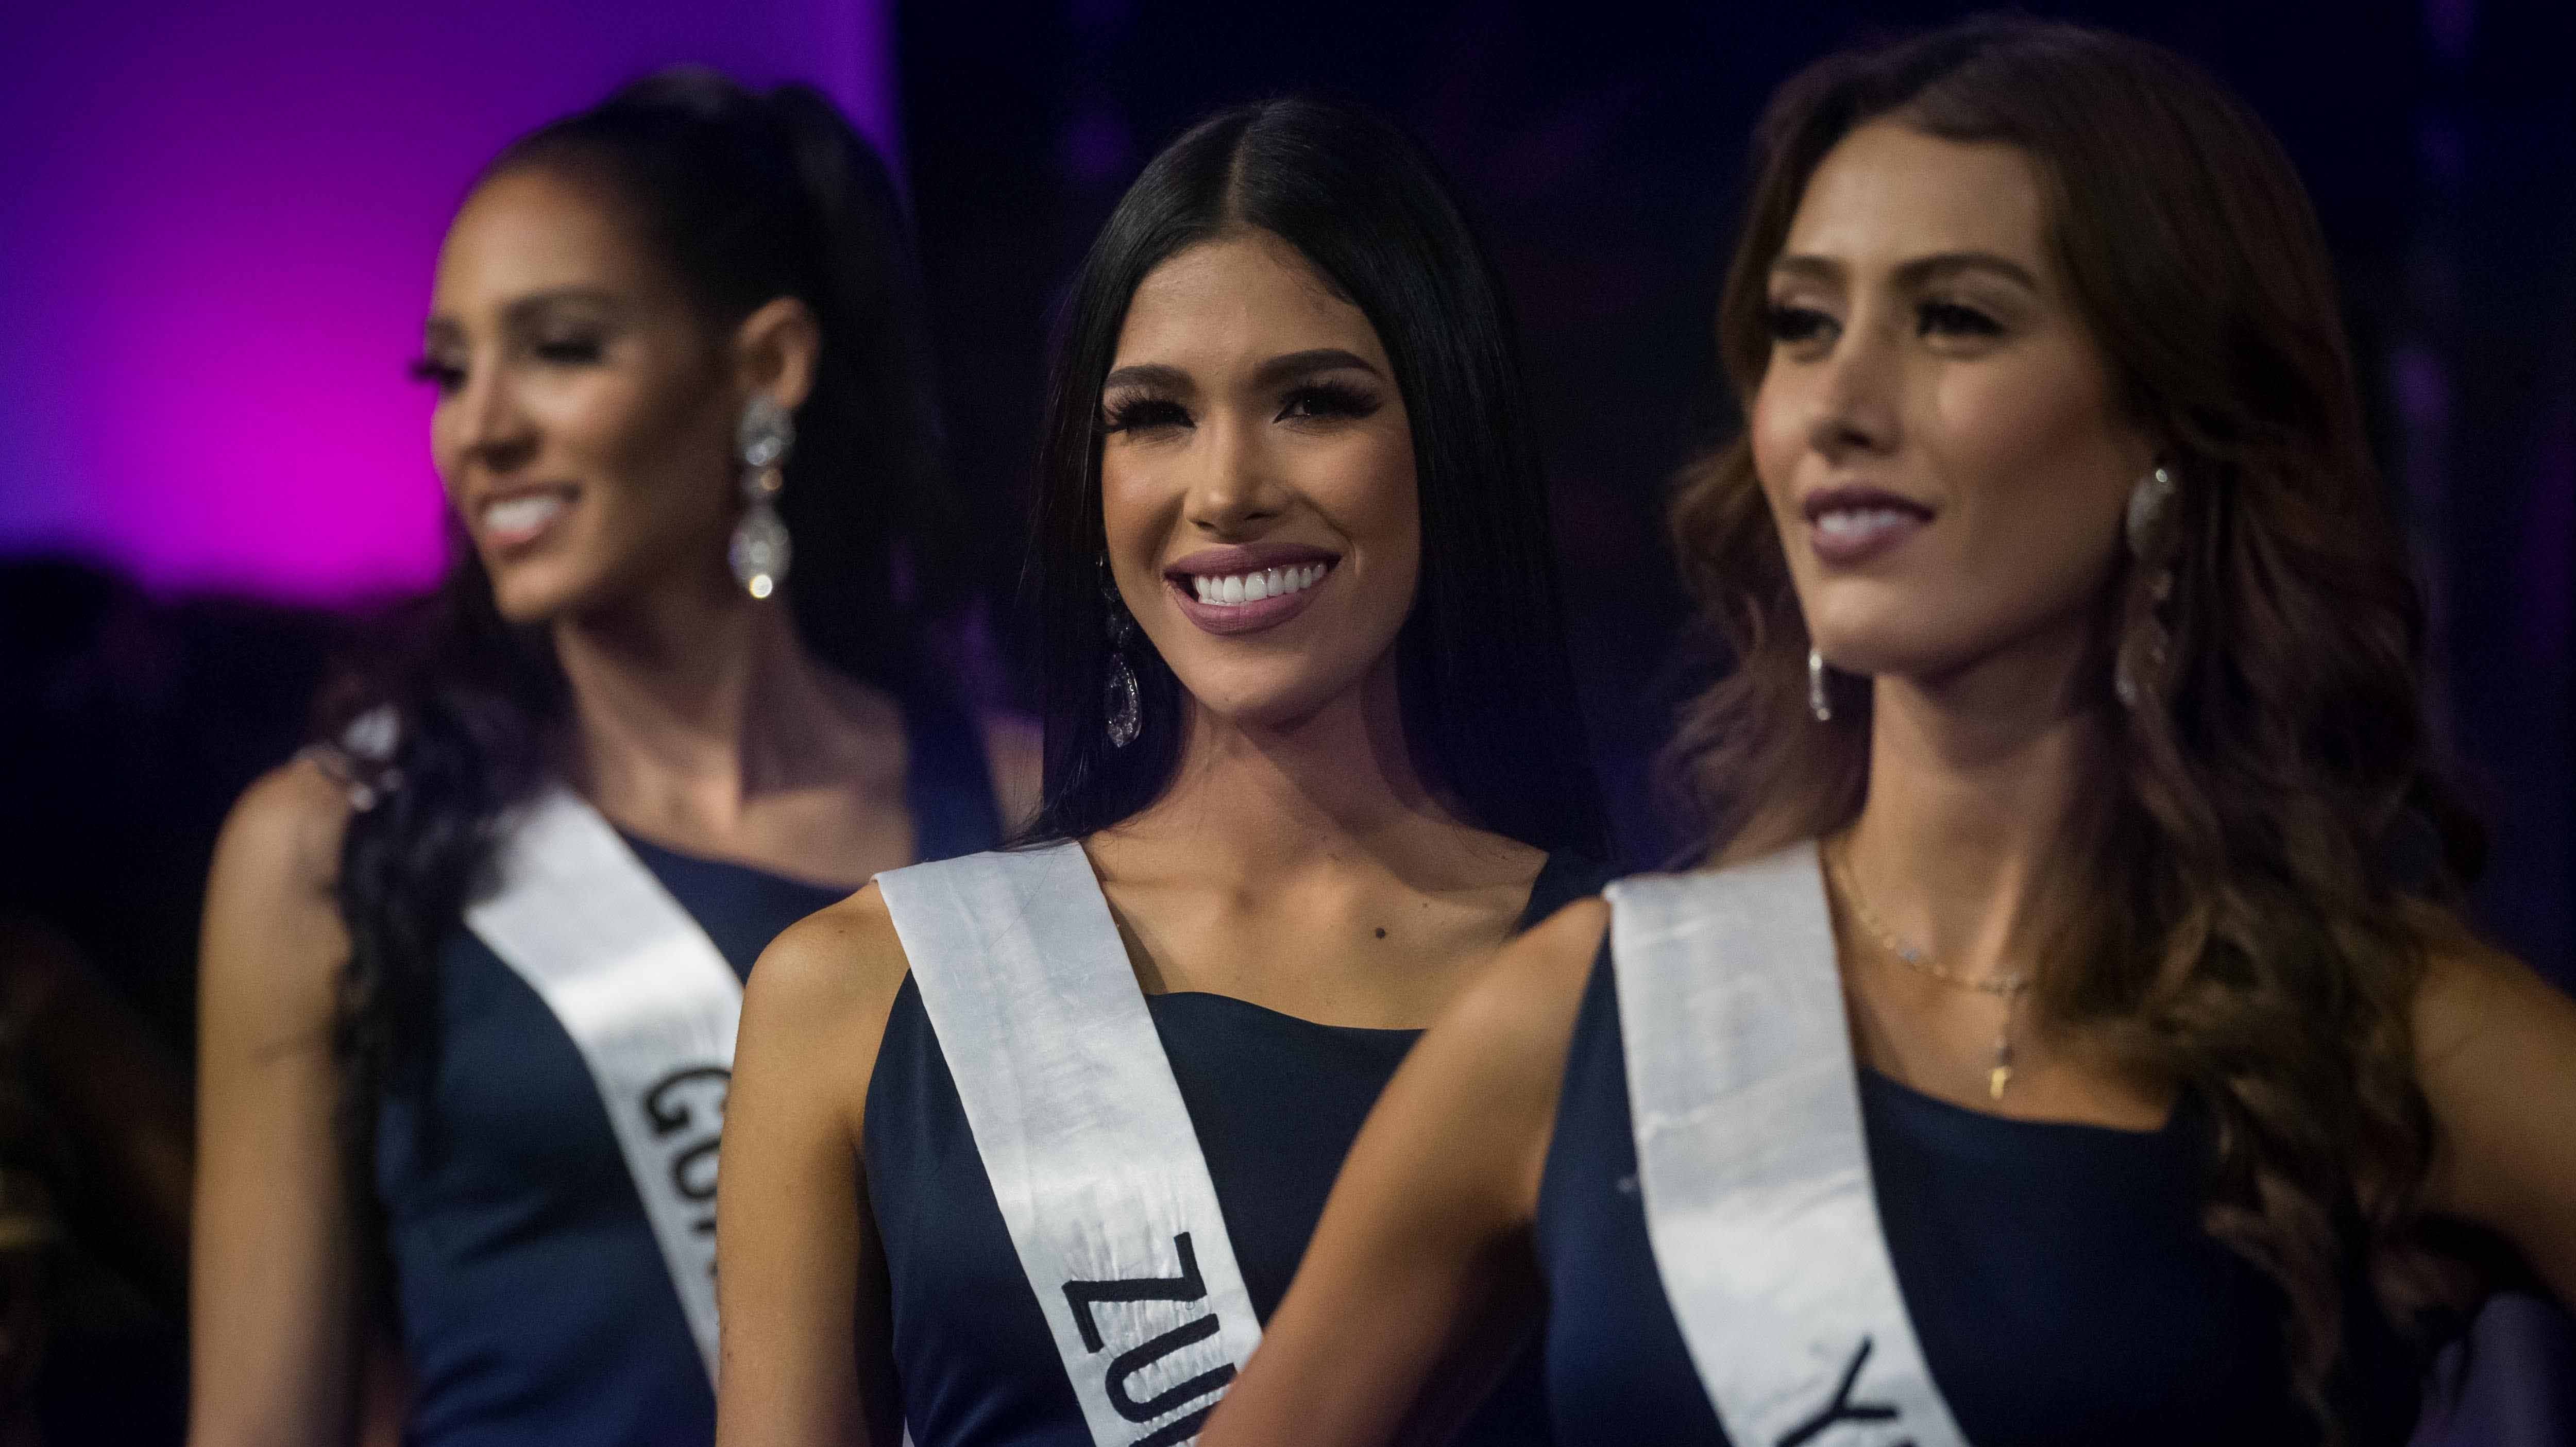 Un reducido Miss Venezuela buscará "inspirar" en medio de la austeridad